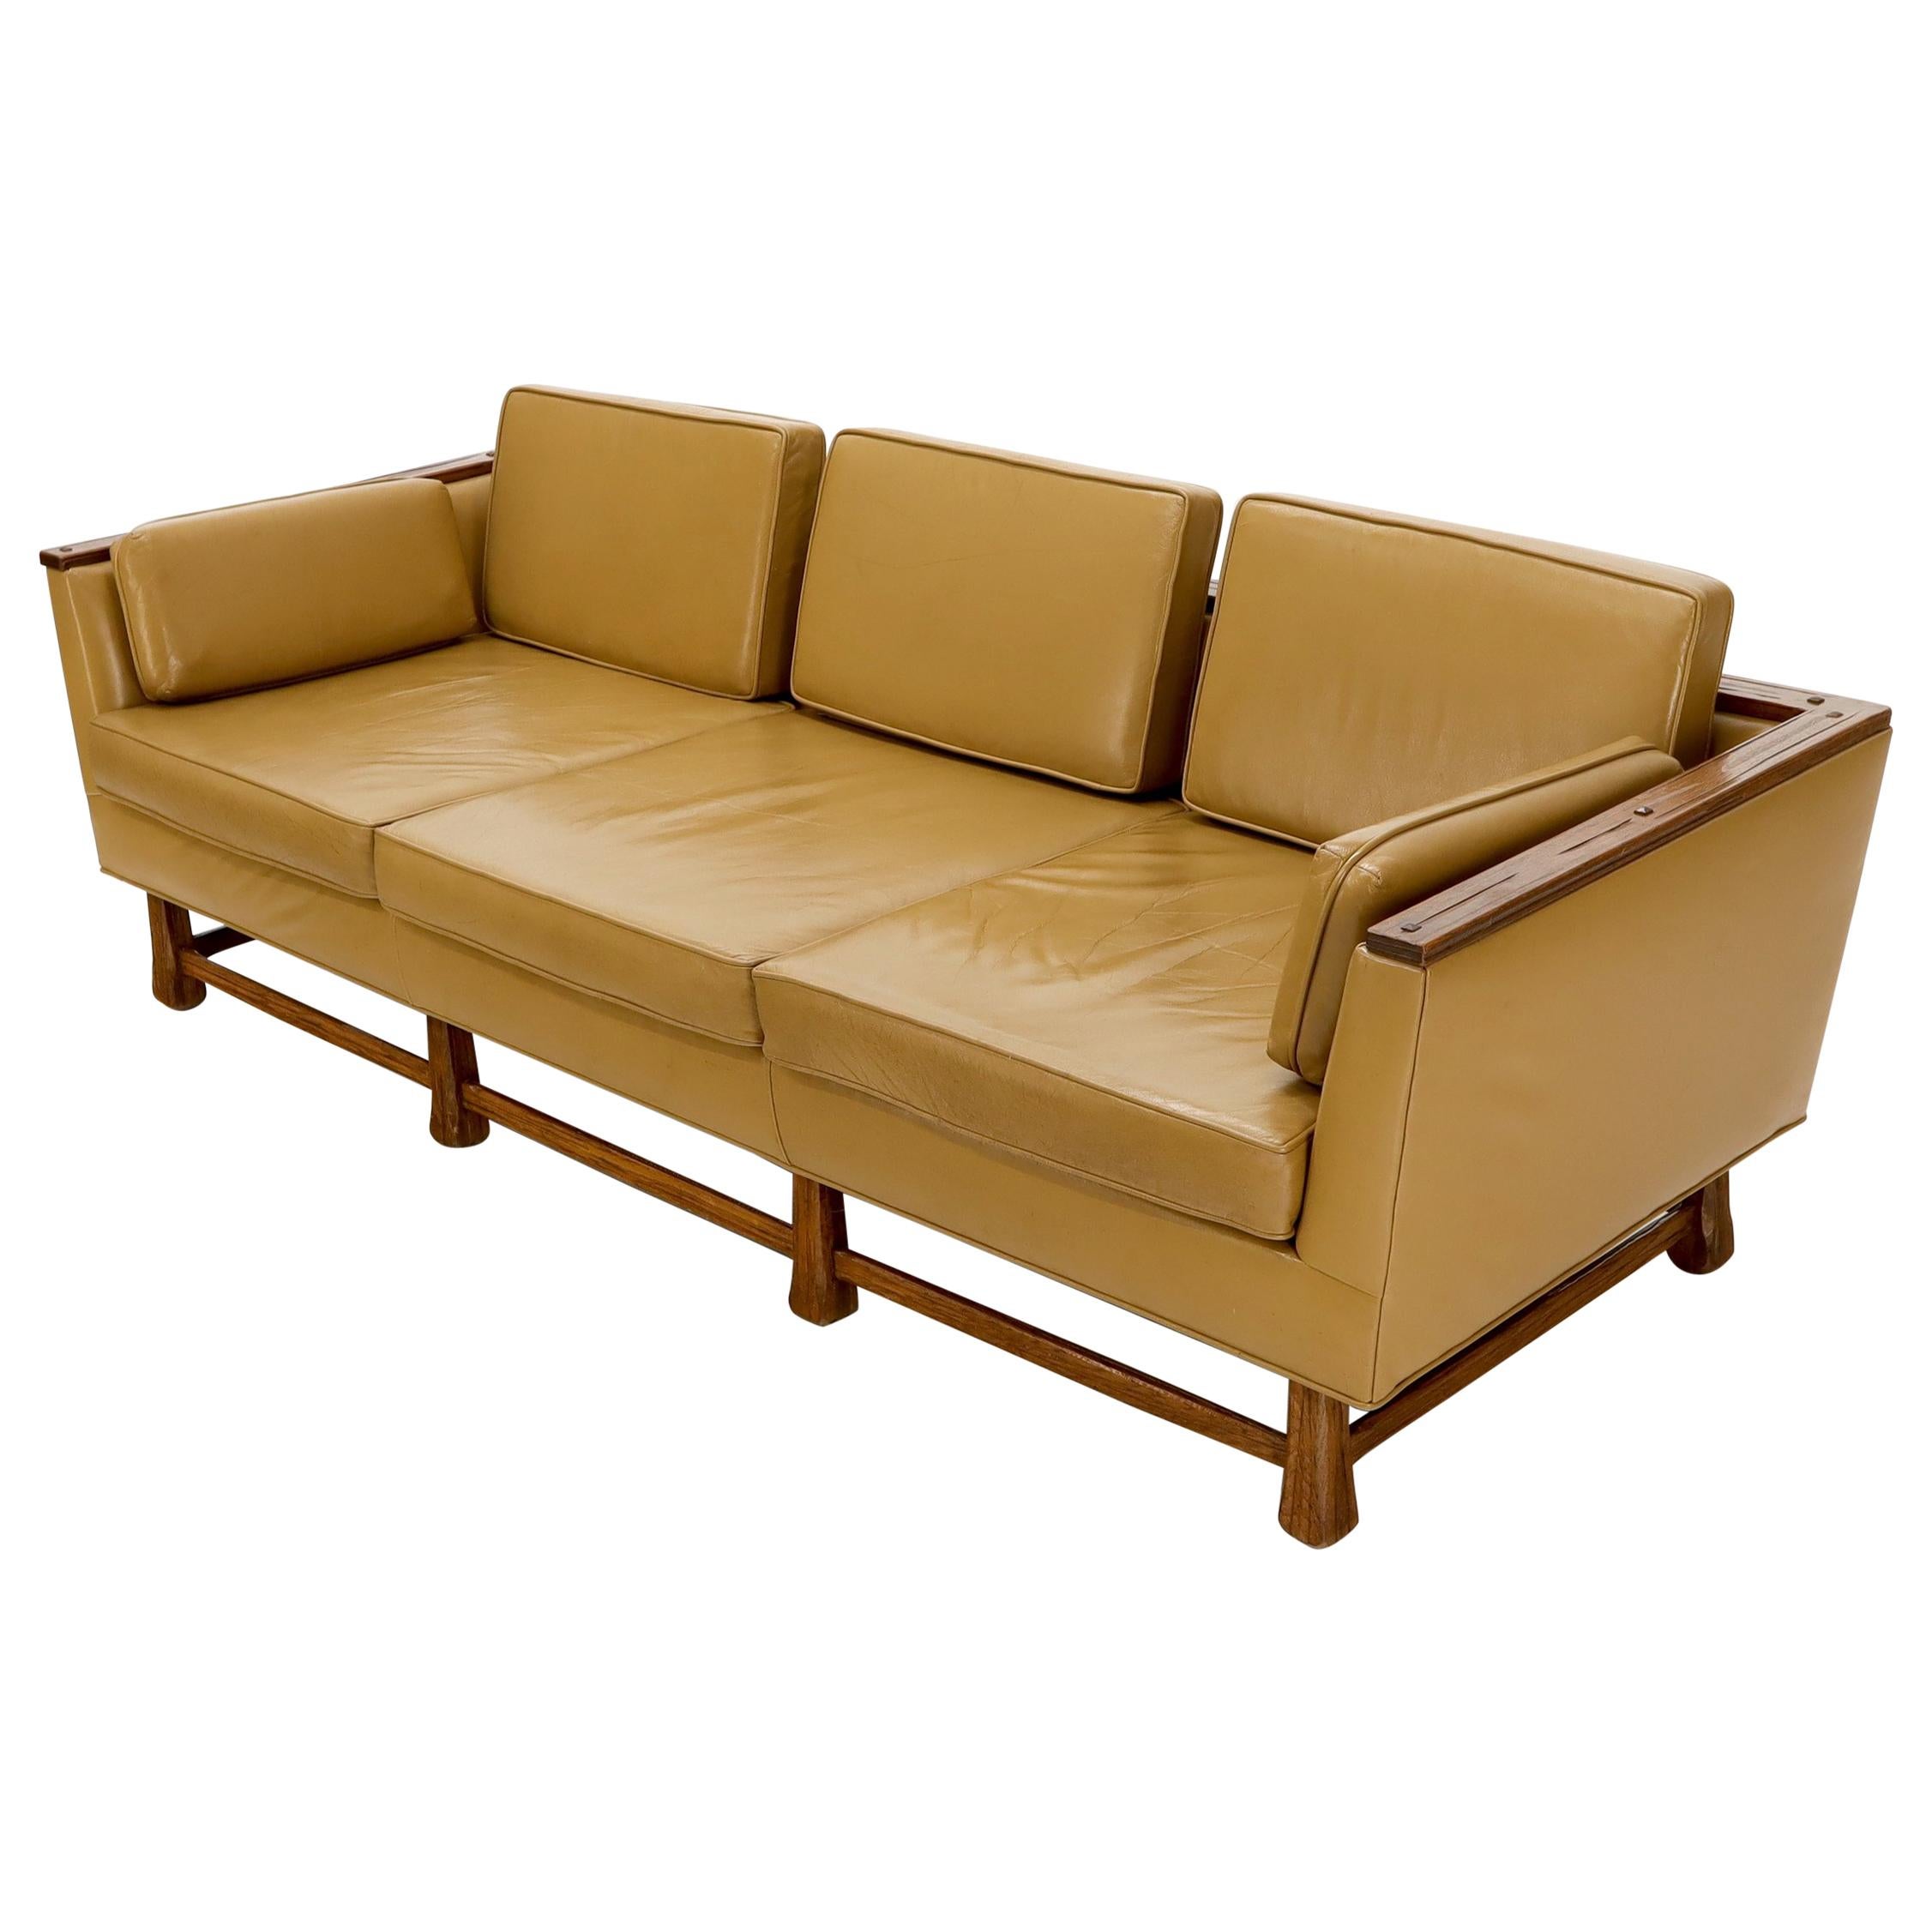 Canapé à cadre en chêne et cuir brun clair de style mi-siècle moderne, Ranch Oak